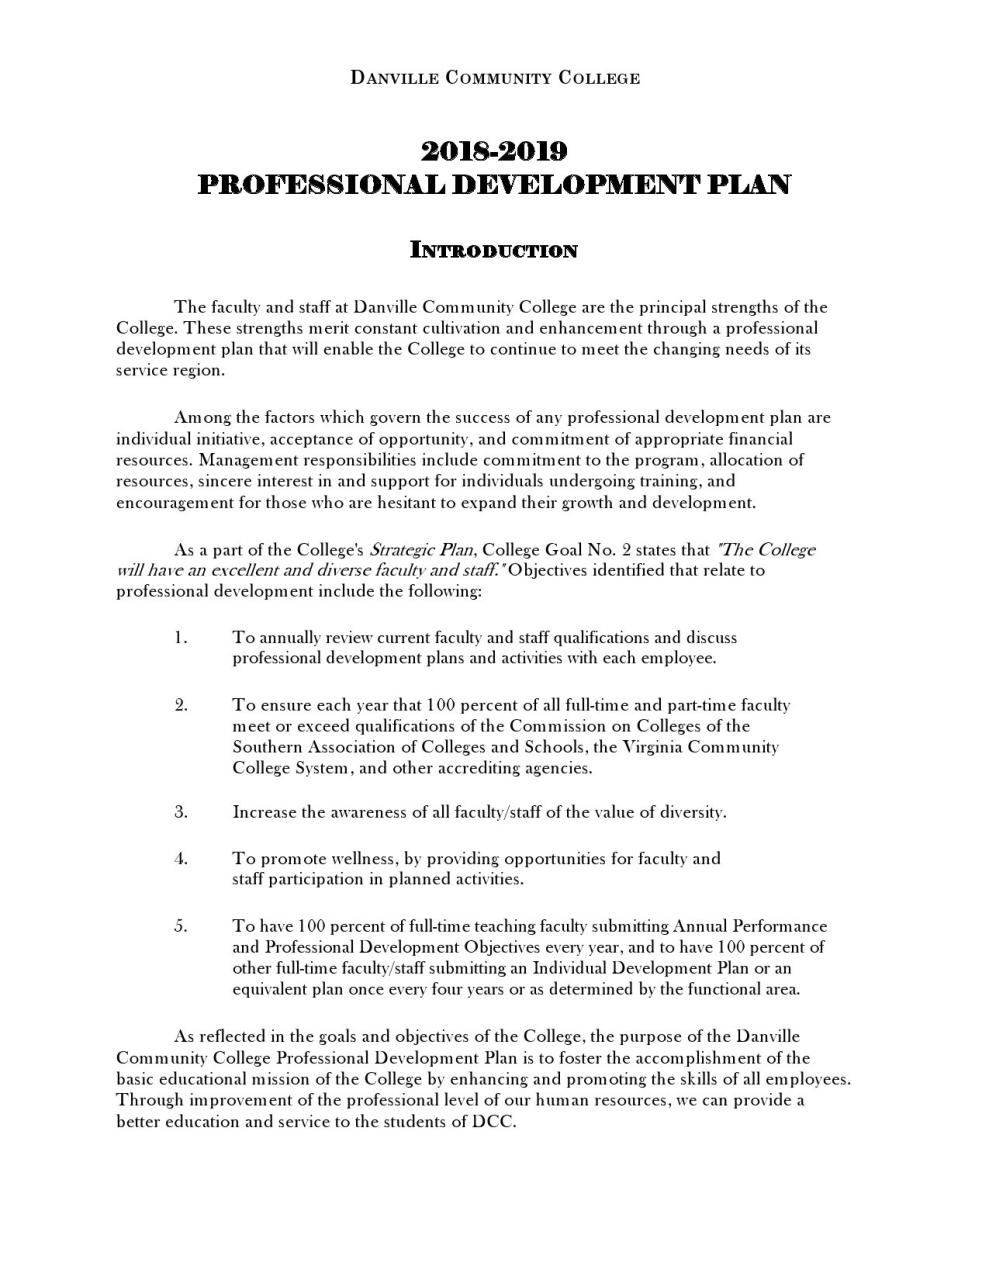 Plan de développement professionnel gratuit 19